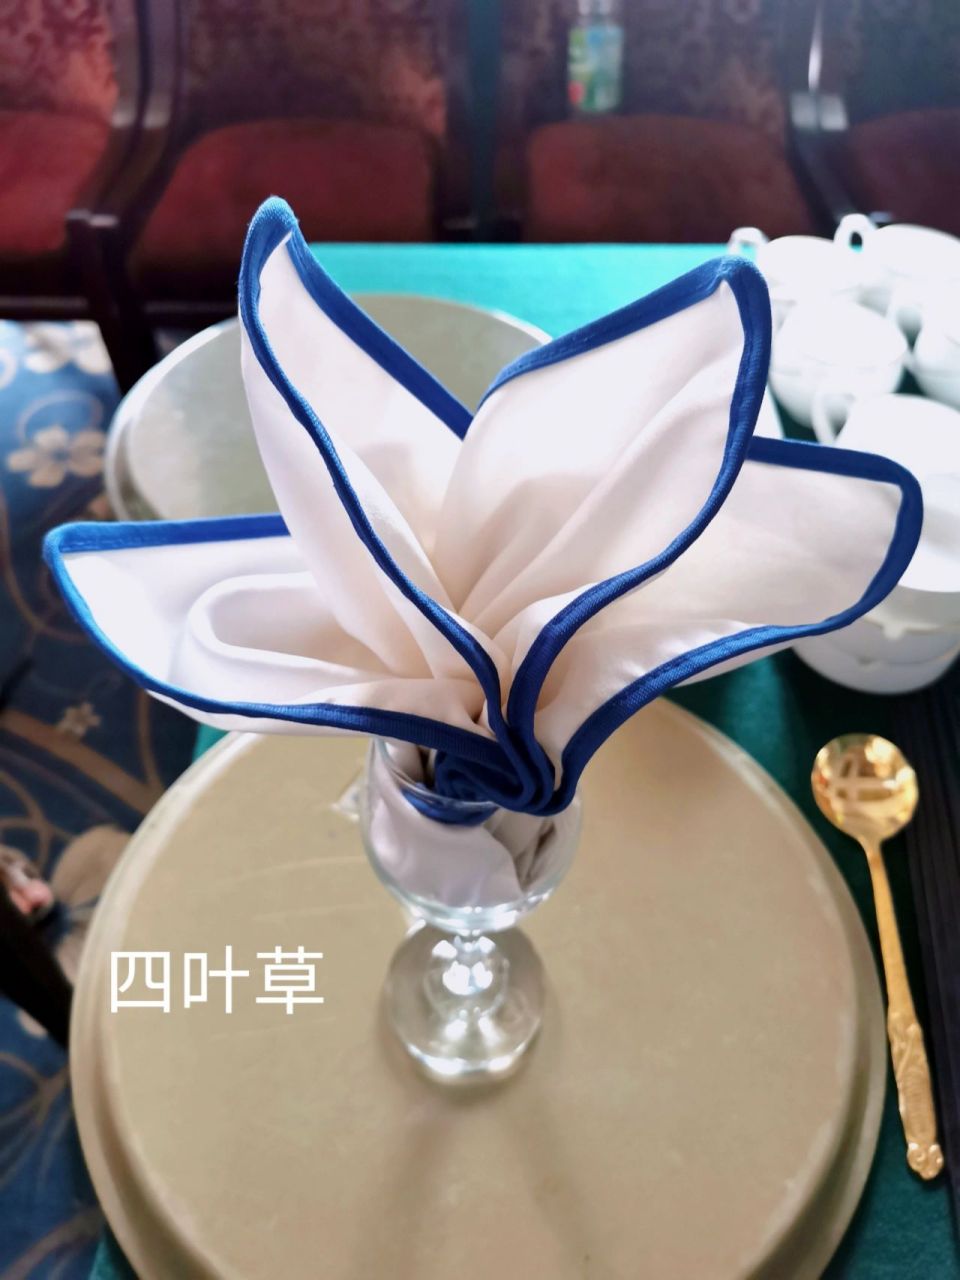 餐巾折花教程 马蹄莲图片